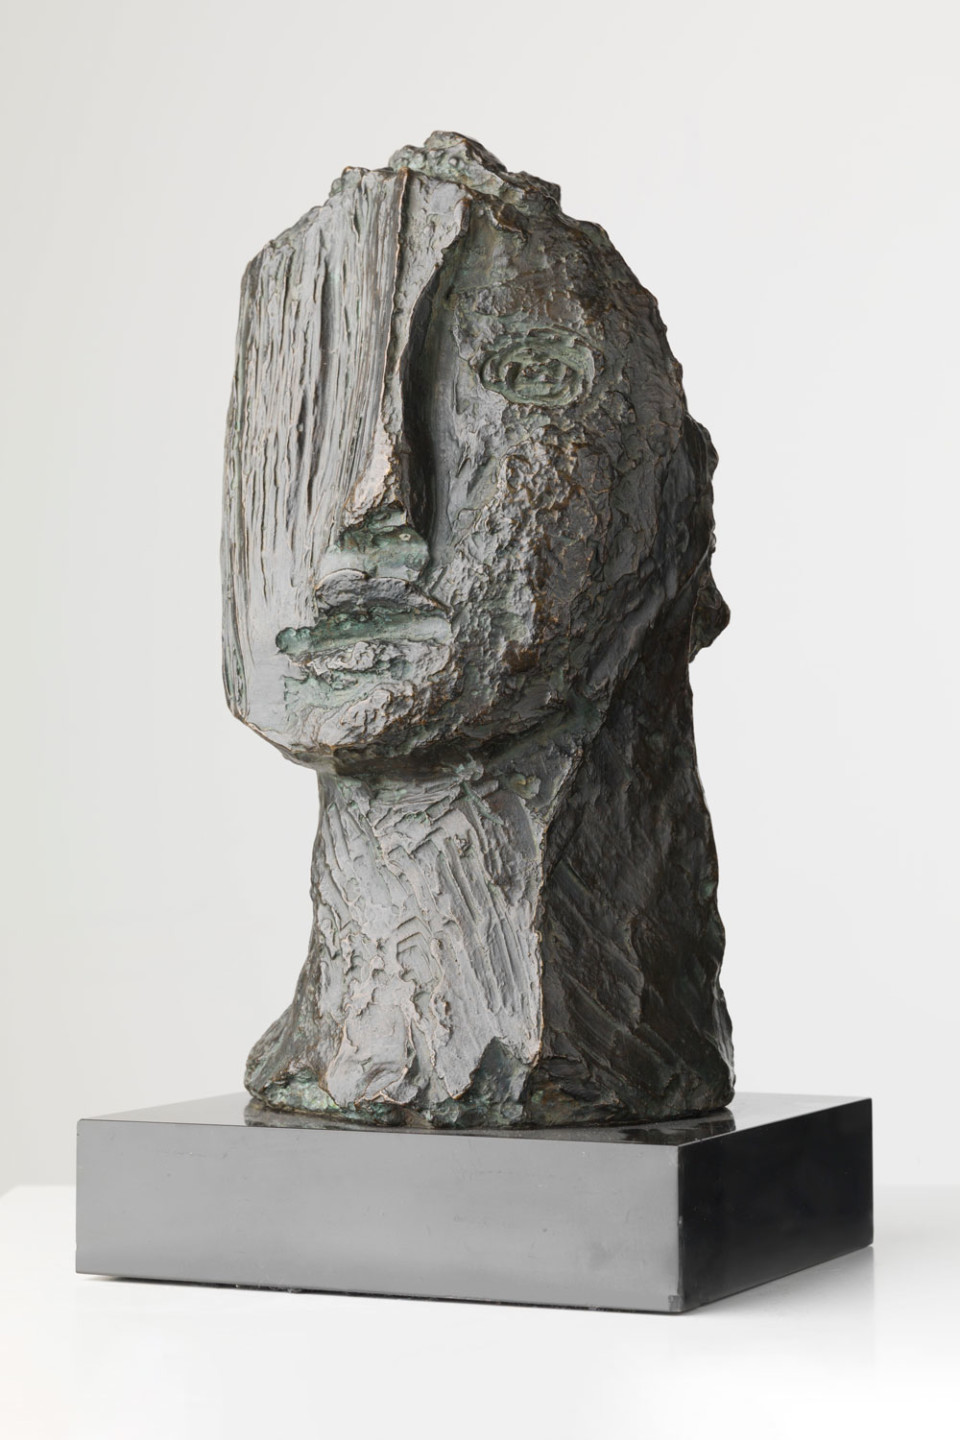 The bronze sculpture La Grande tête [The Large Head] by Jean Fautrier